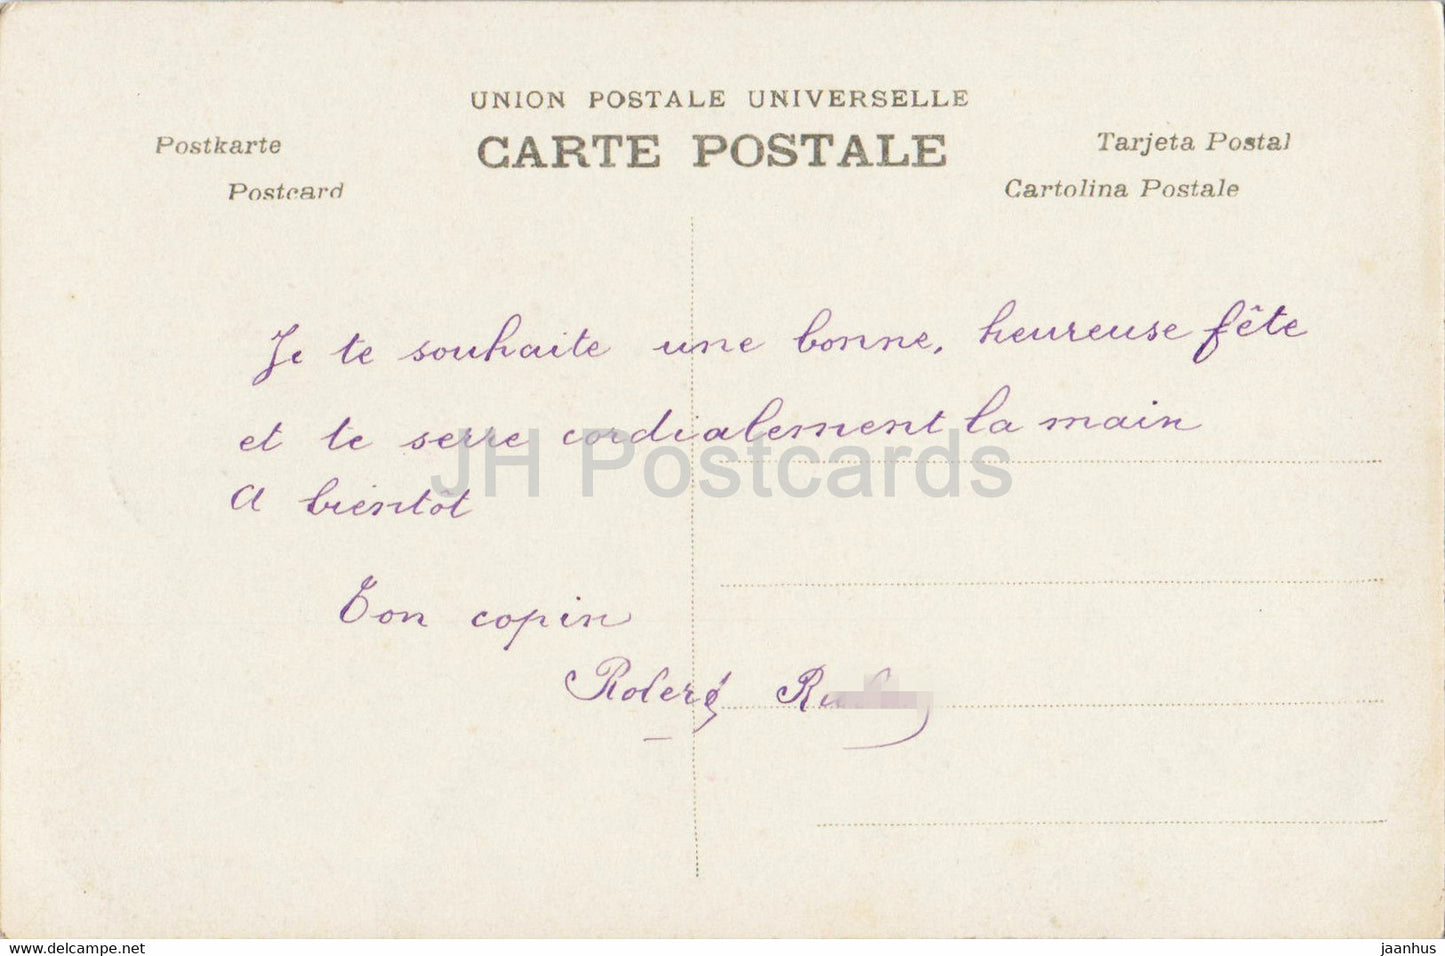 Carte de voeux anniversaire - Bonne Fête - garçon - 1076 - AN Paris - carte postale ancienne - France - occasion